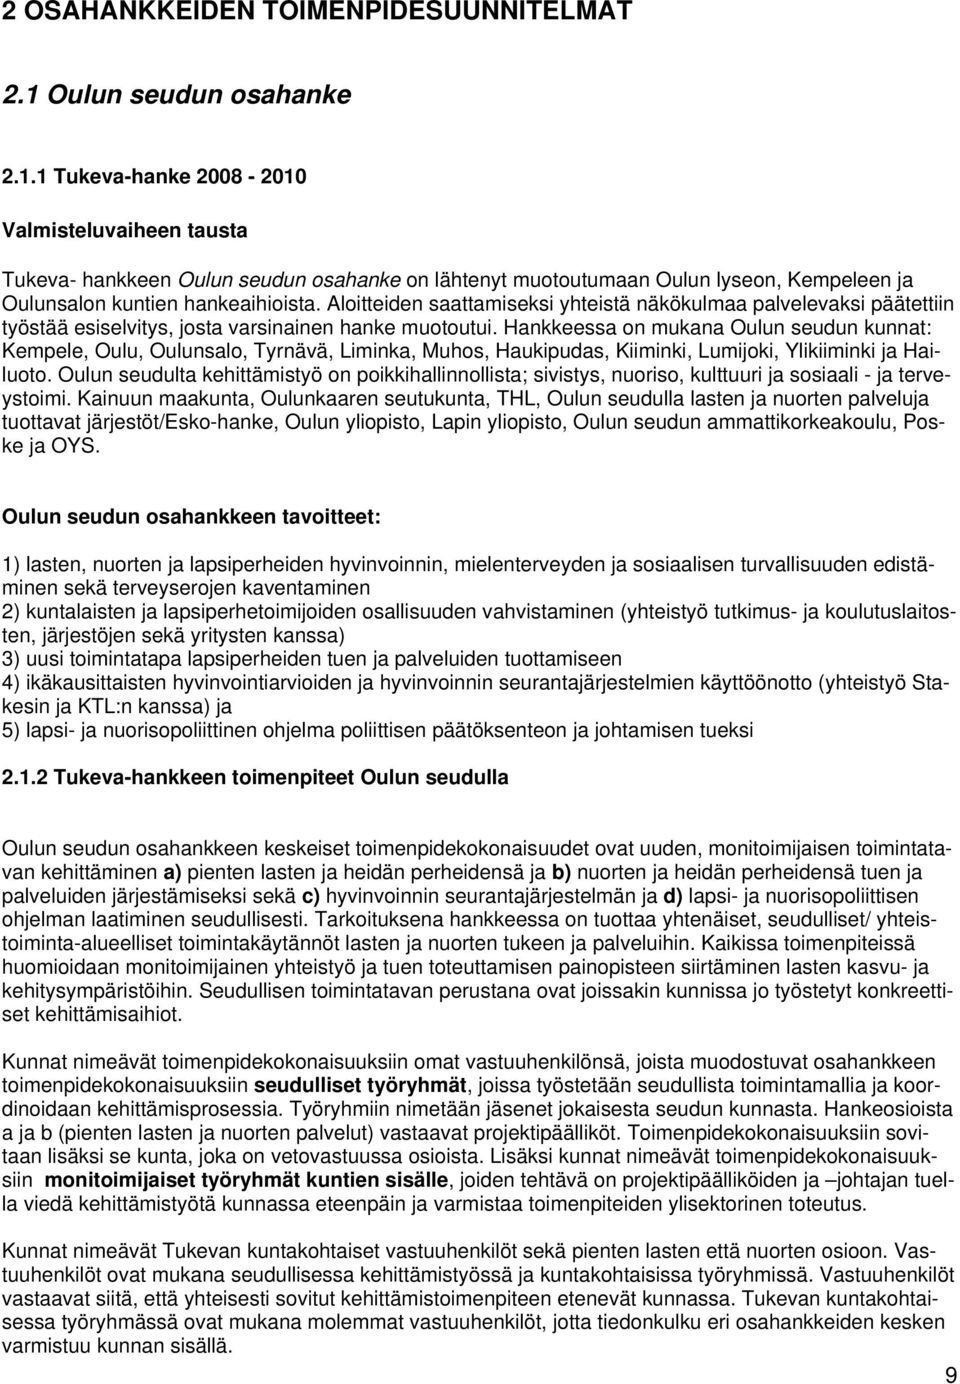 1 Tukeva-hanke 2008-2010 Valmisteluvaiheen tausta Tukeva- hankkeen Oulun seudun osahanke on lähtenyt muotoutumaan Oulun lyseon, Kempeleen ja Oulunsalon kuntien hankeaihioista.